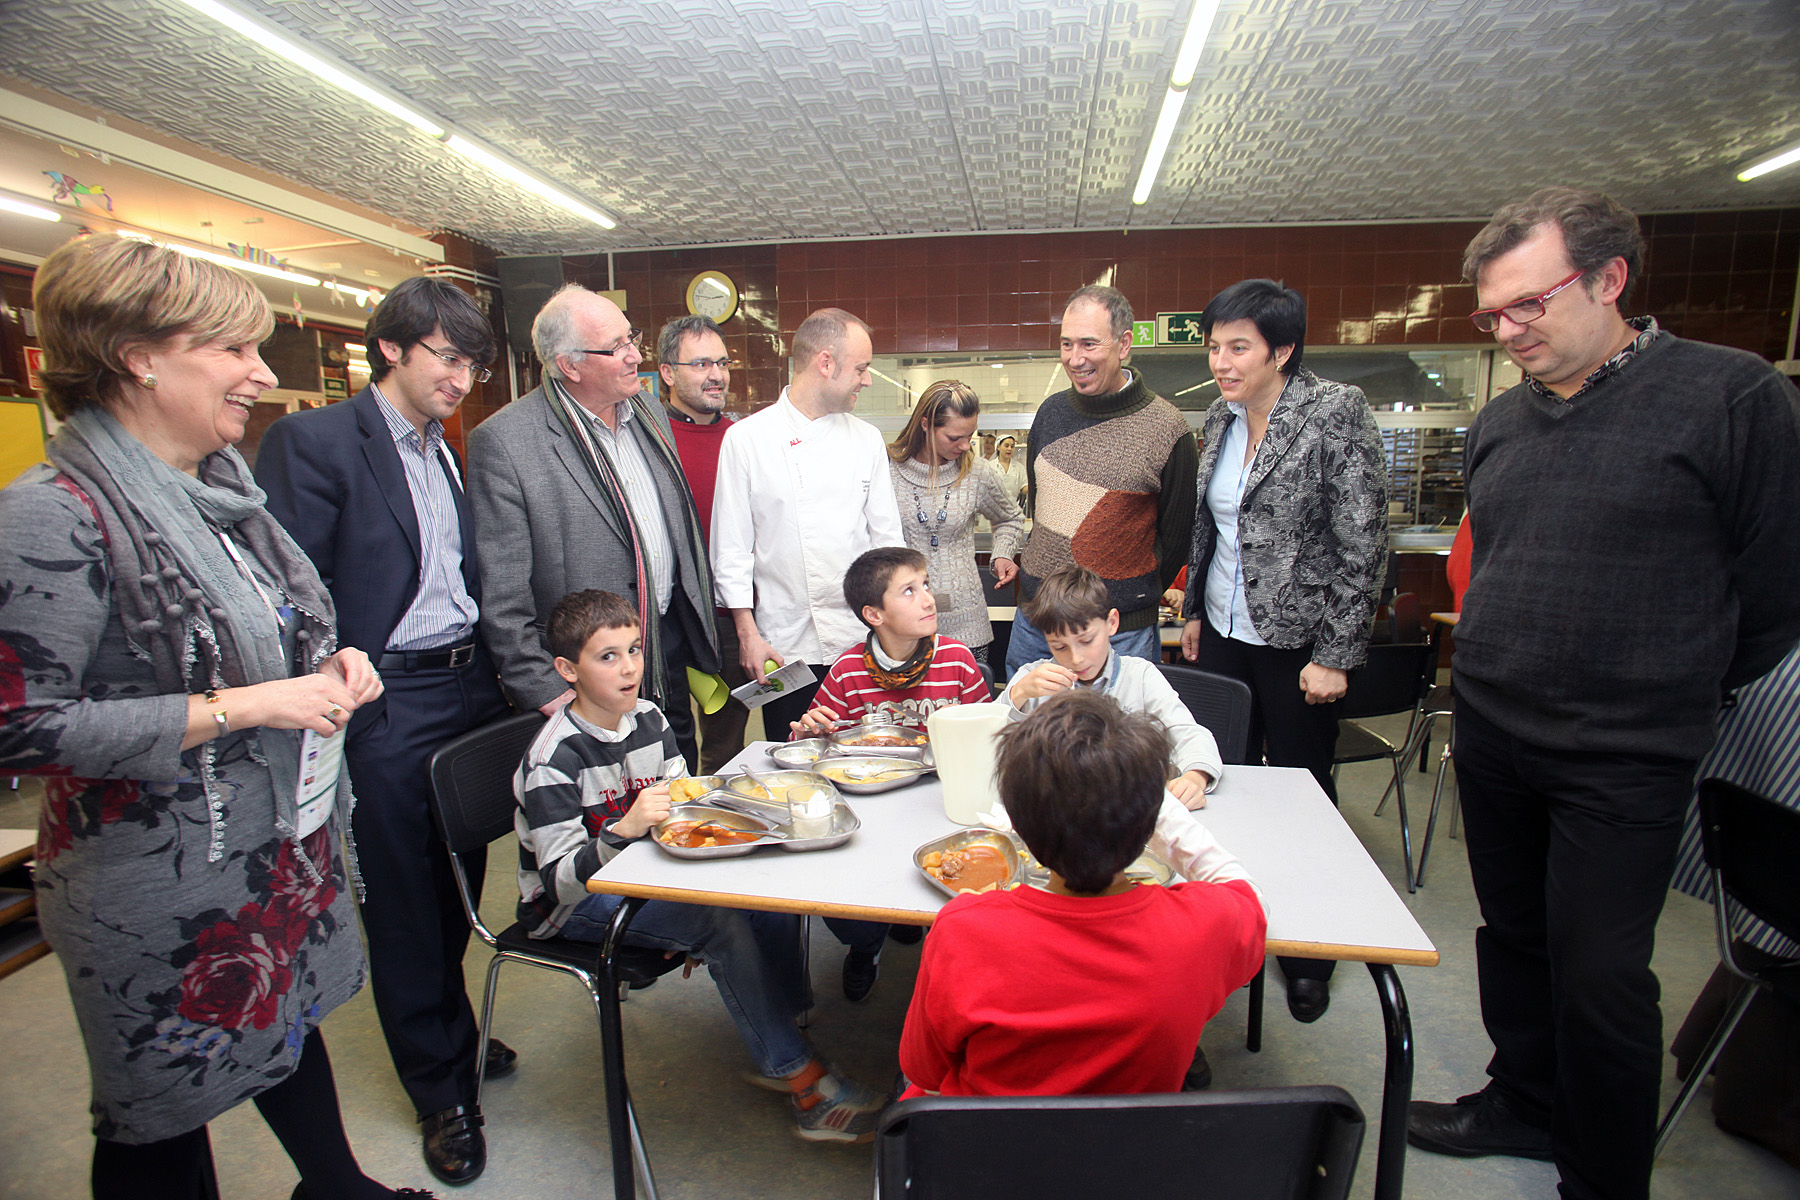 La 1a tinenta d'alcalde Marta Camps, acompanyada del regidor de Medi Ambient i Horta, Josep Barberà, ha visitat l'activitat.